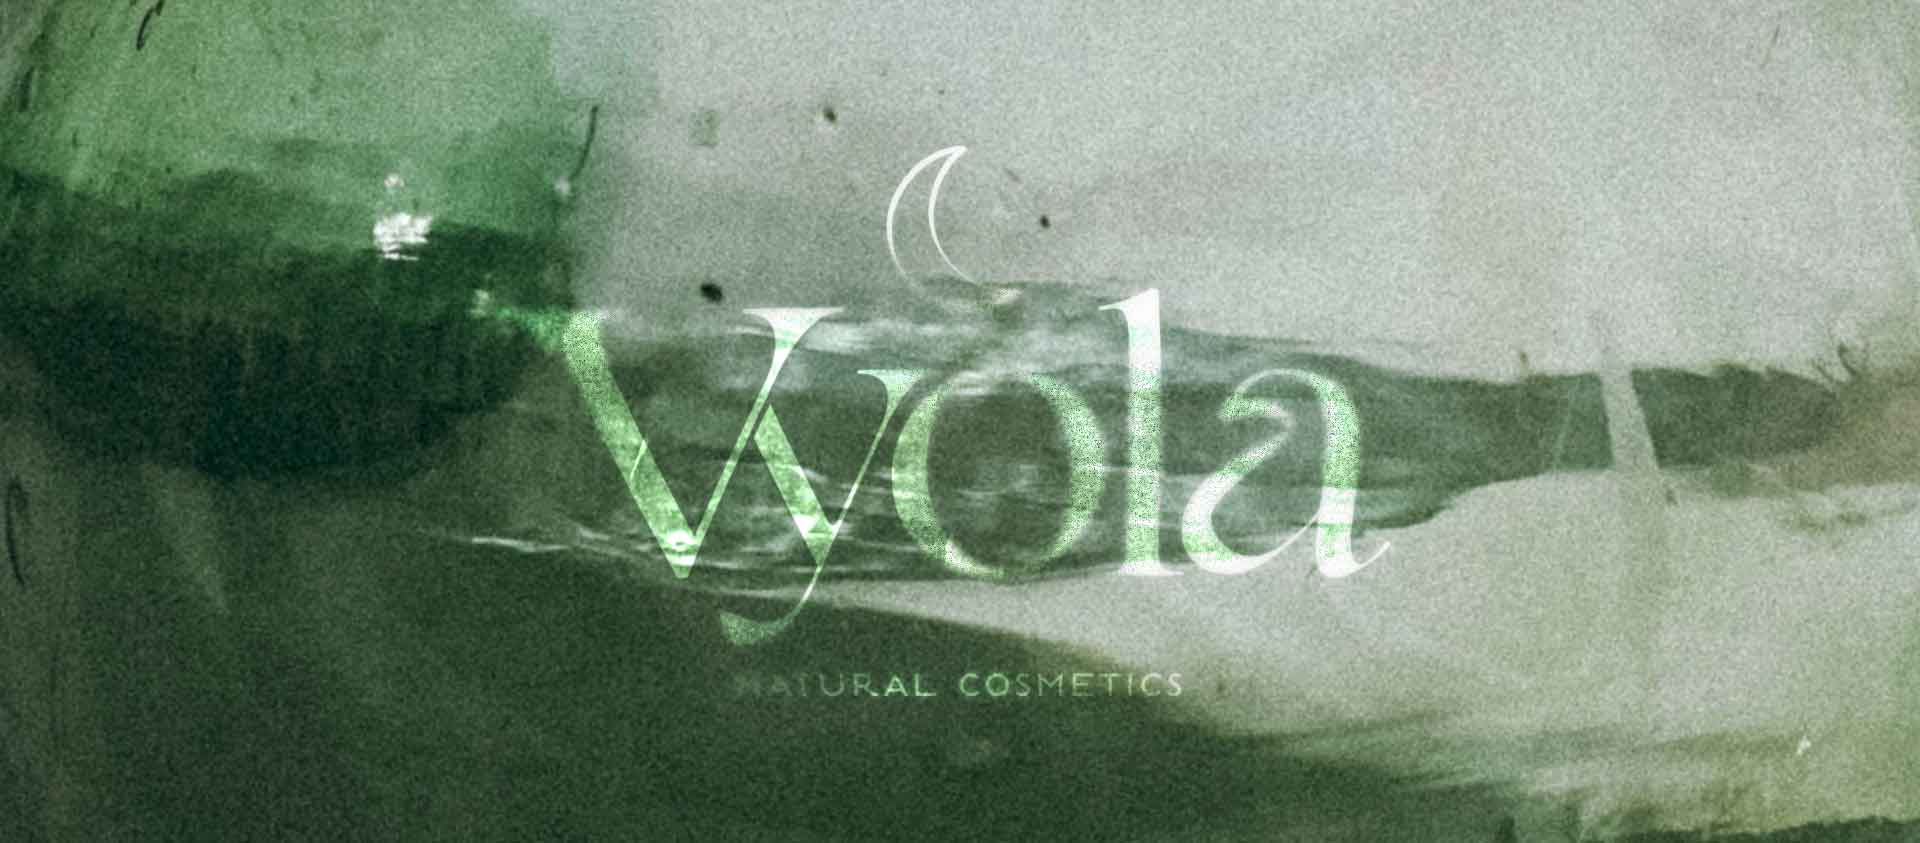 Vyola – Natural Cosmetics